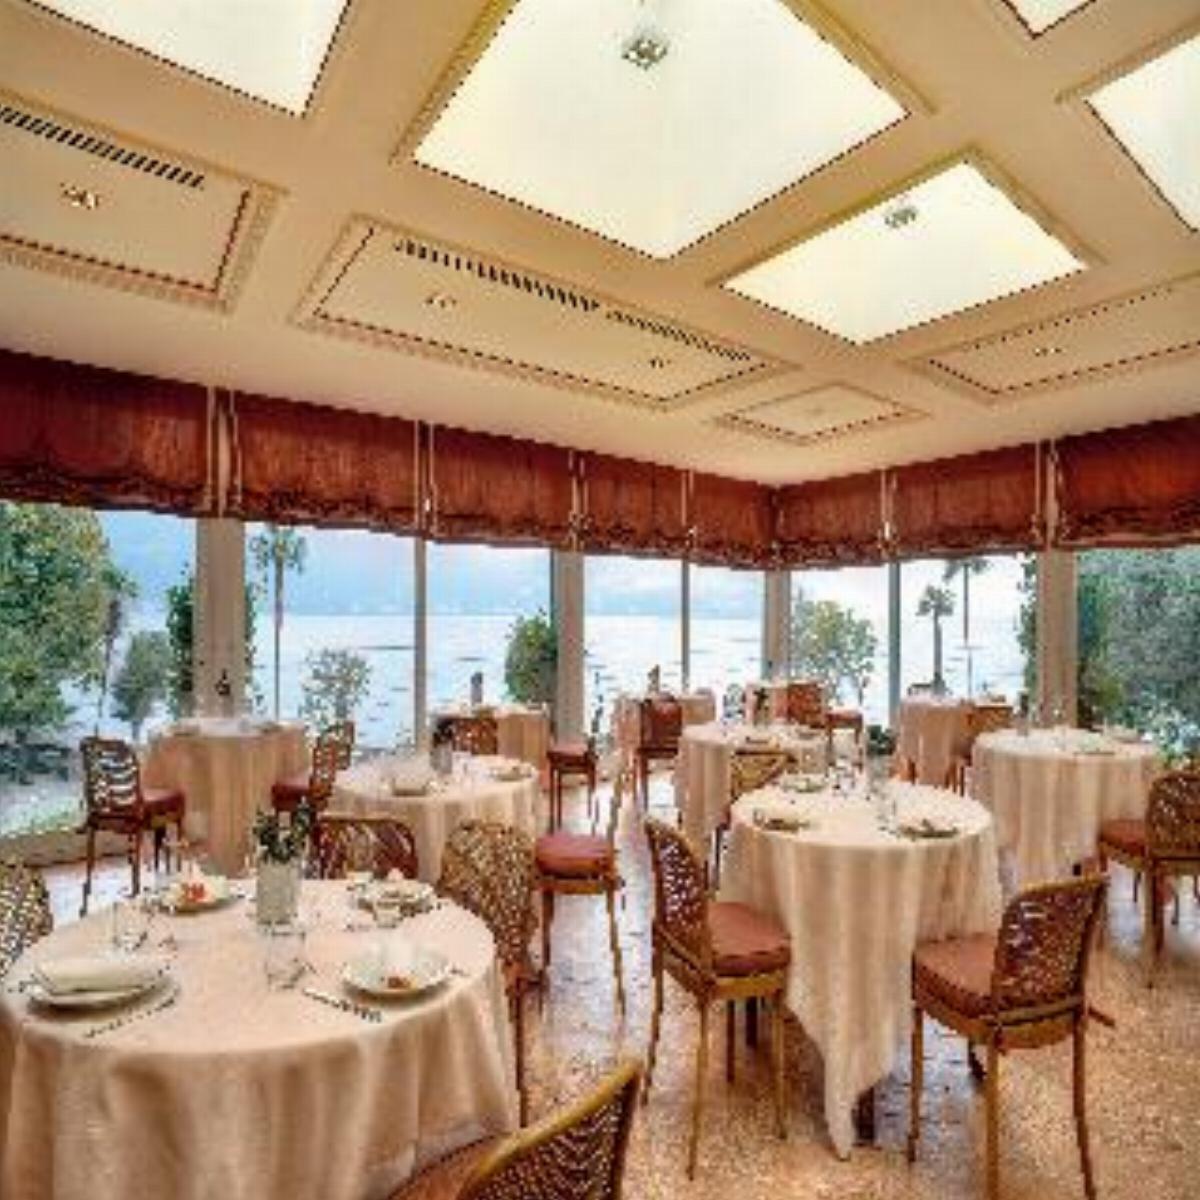 Grand Hotel Majestic Hotel Maggiore Lake Italy